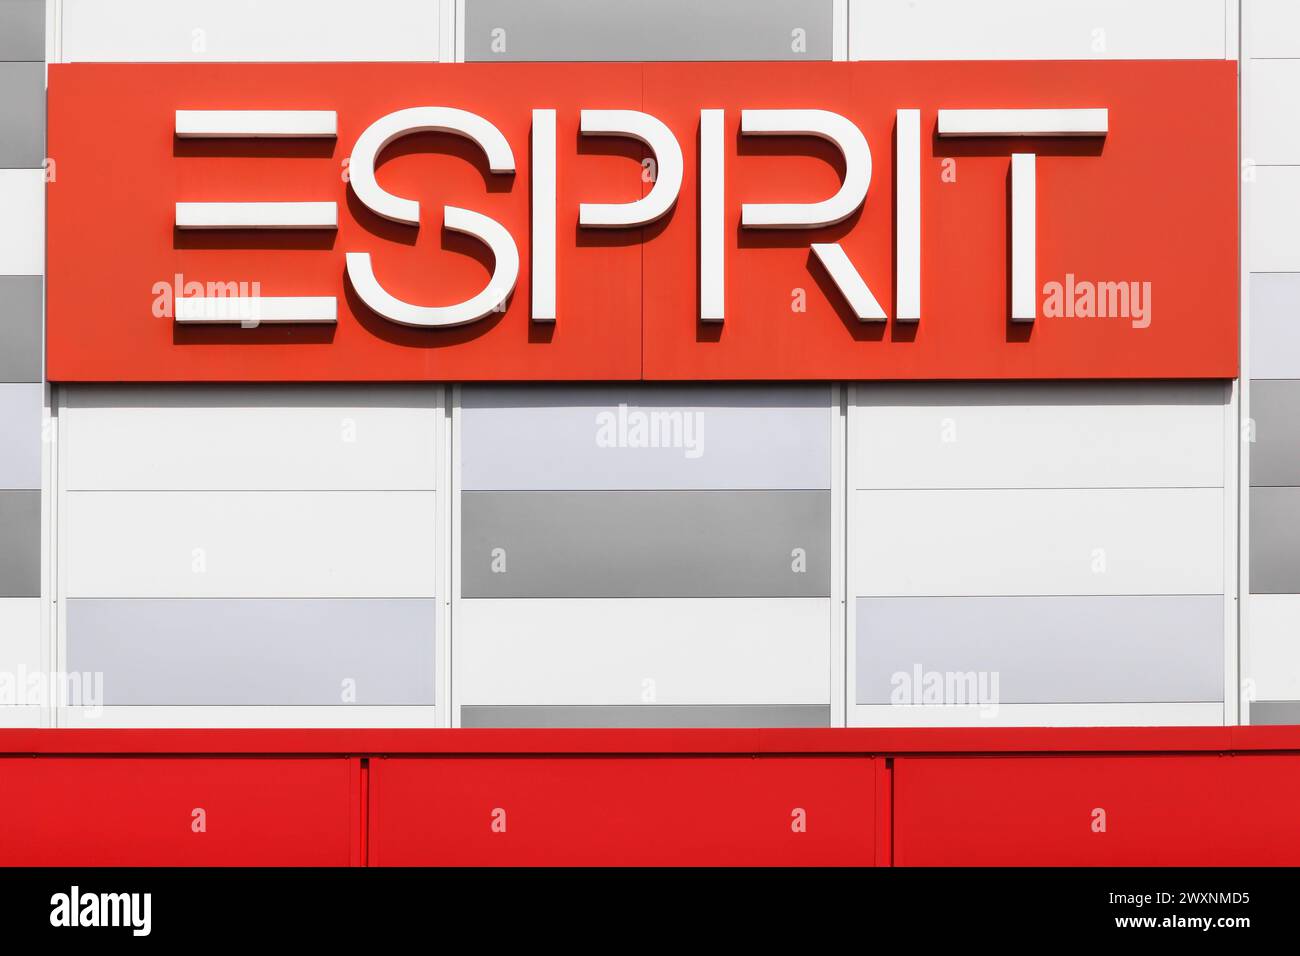 CRECHES, Frankreich - 27. Mai 2018: ESPRIT-Logo auf einer Fassade. ESPRIT ist ein Hersteller von Bekleidung, Schuhen, Accessoires und Schmuck Stockfoto